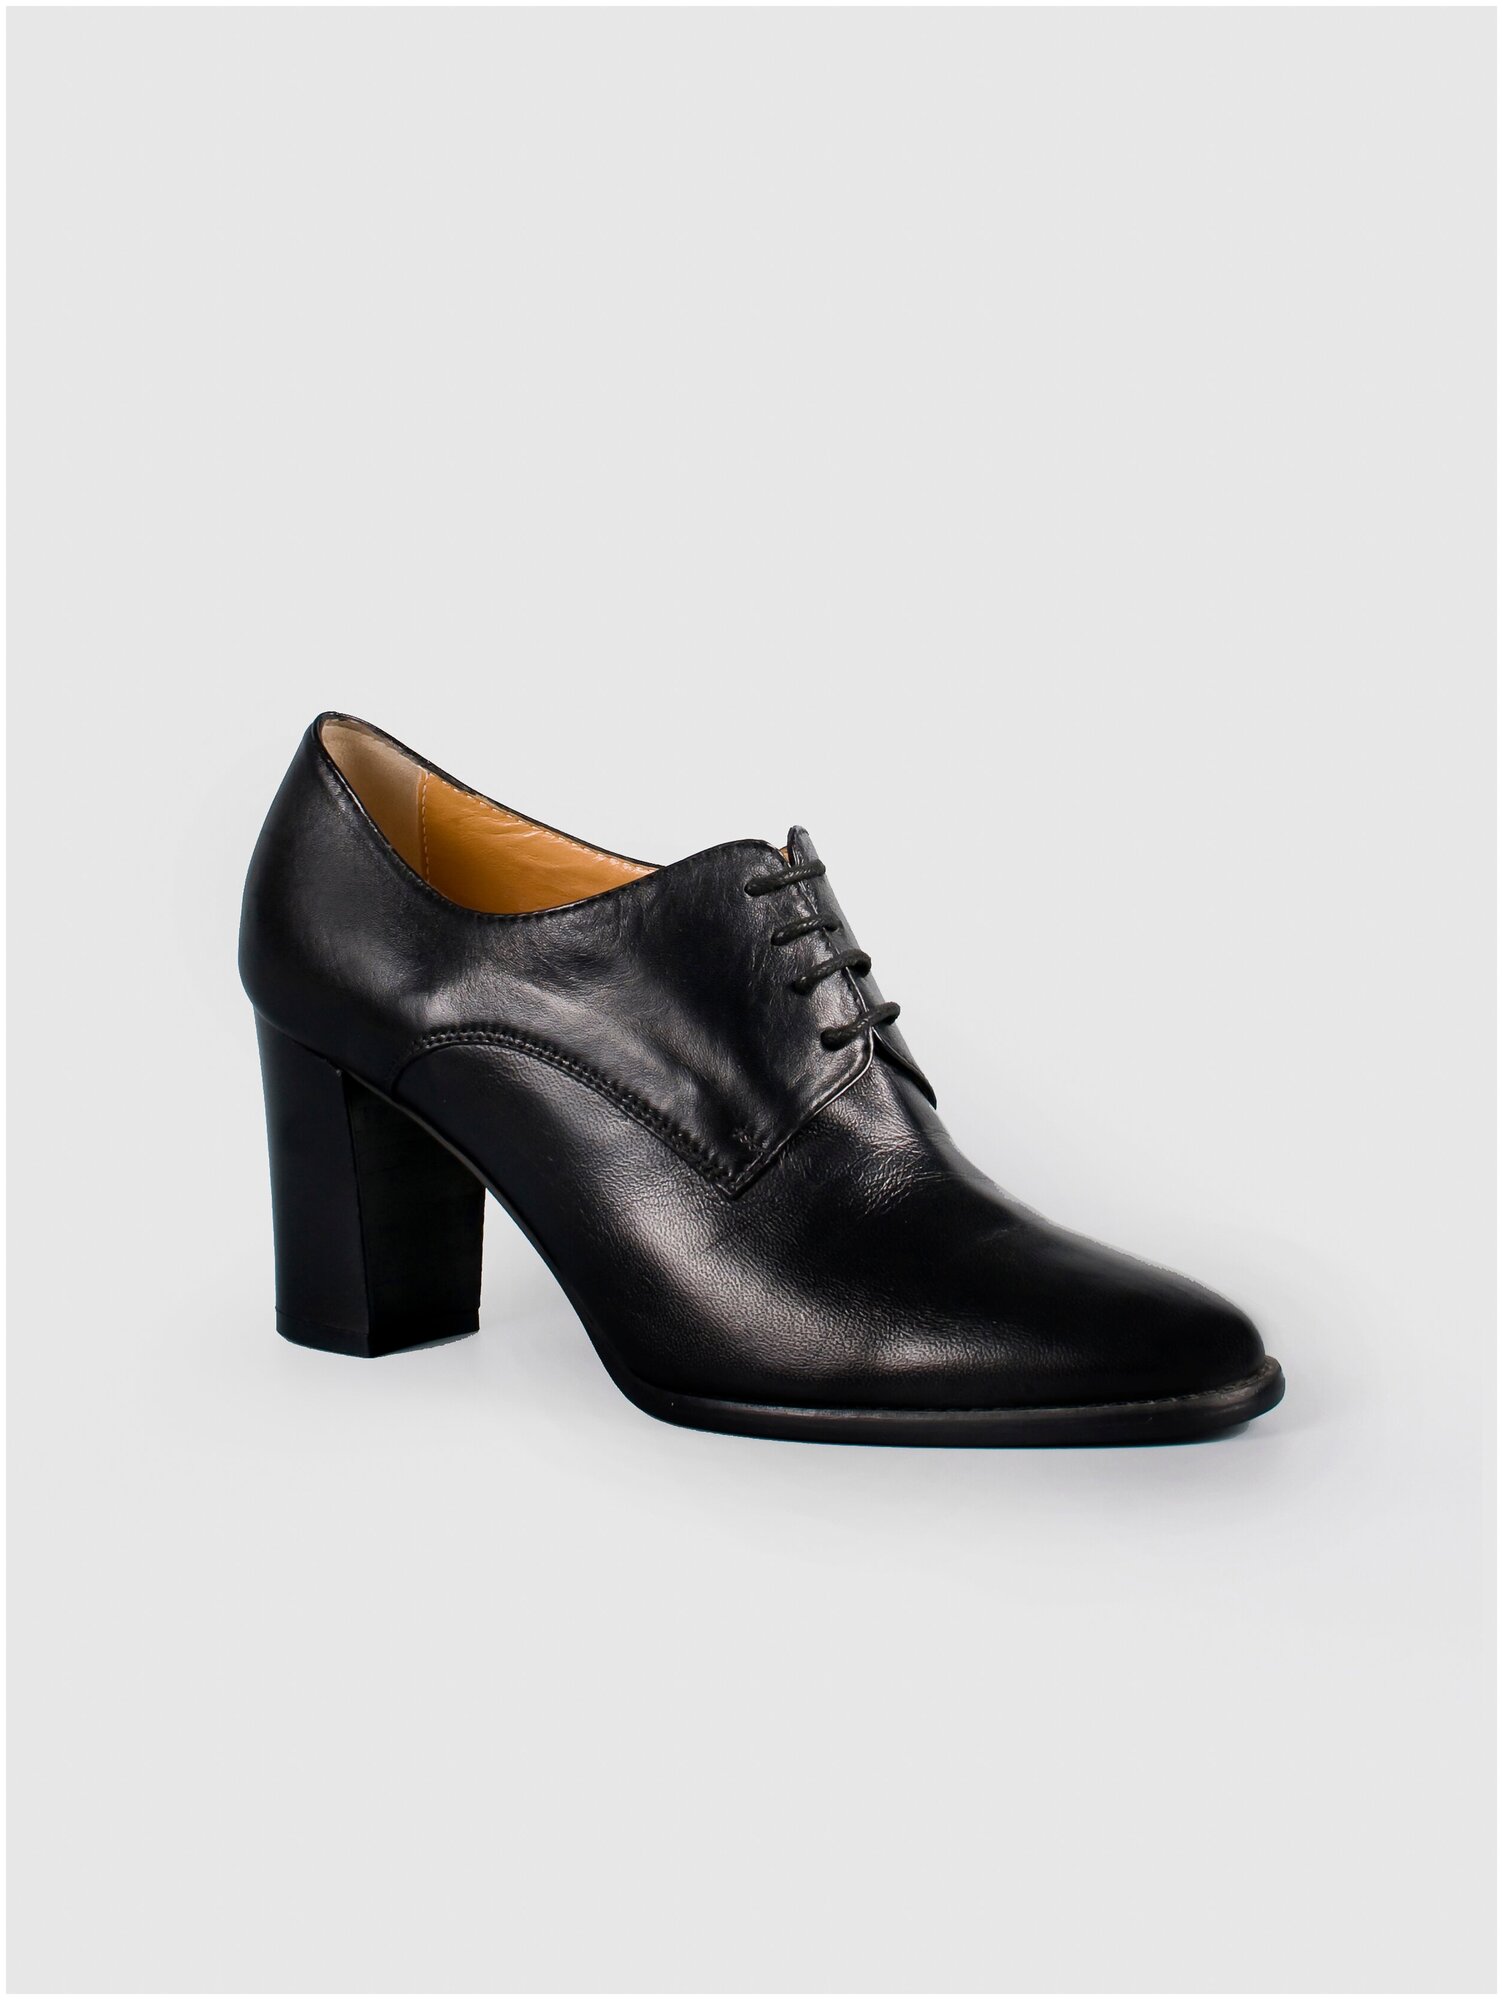 Женская обувь G. Benatti туфли натуральная кожа черный цвет шнурки